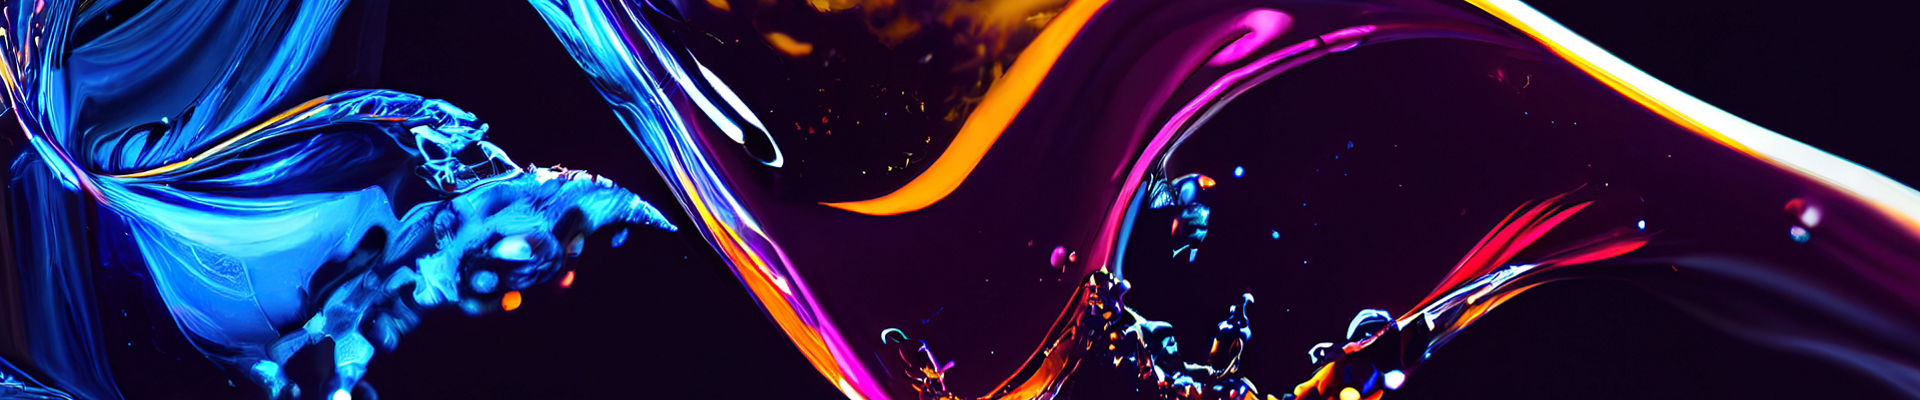 彩色动态液体的抽象图像